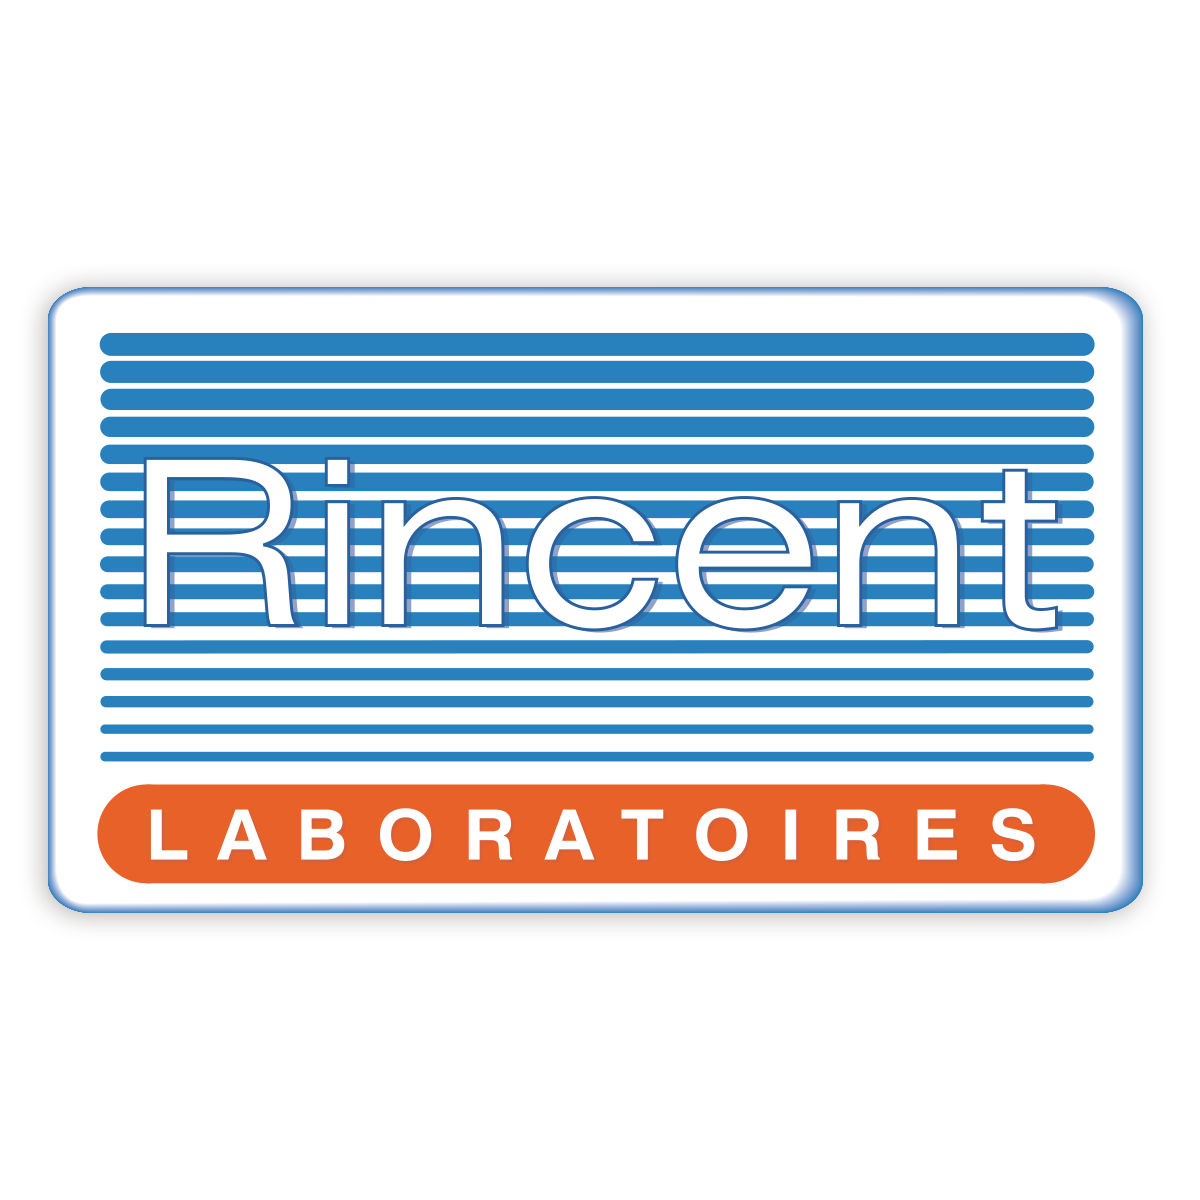 Rincent Laboratoires - Assistant(e) communication et commercial (H/F) - Alternance